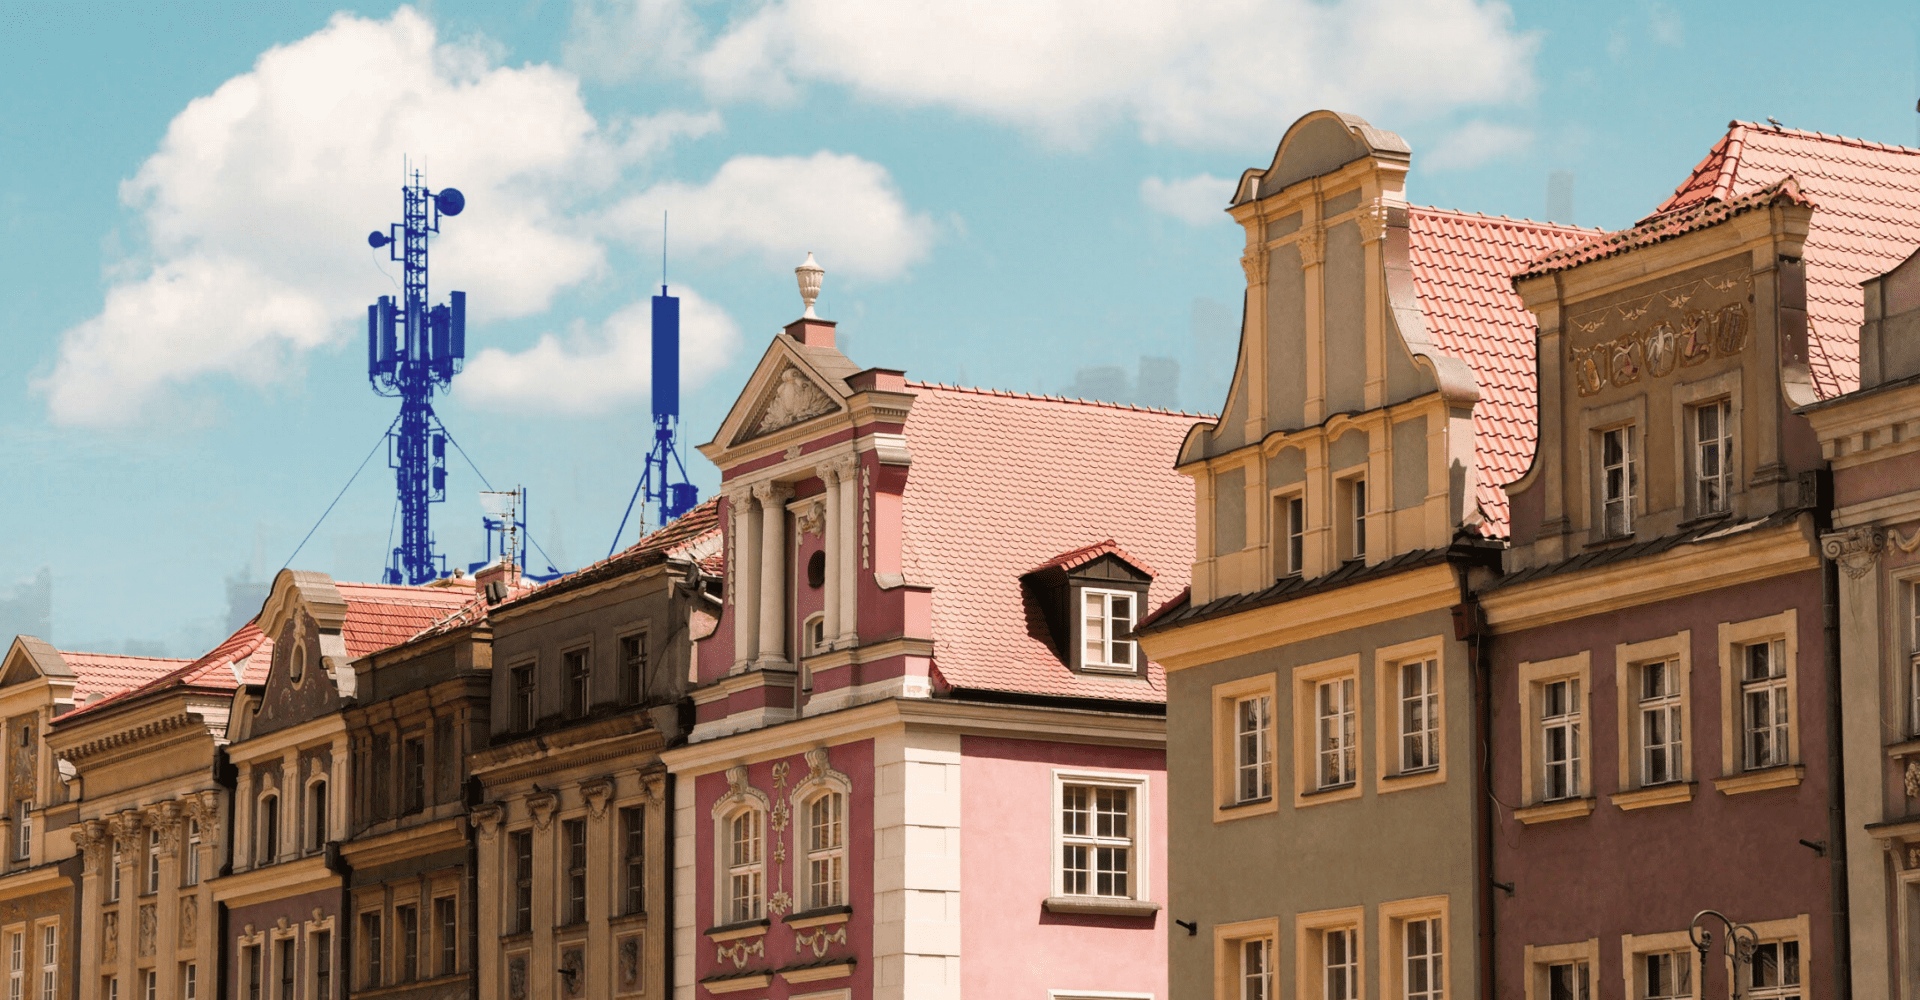 Kolorowe kamienice na Starym Rynku w Poznaniu, a w tle antena 5G